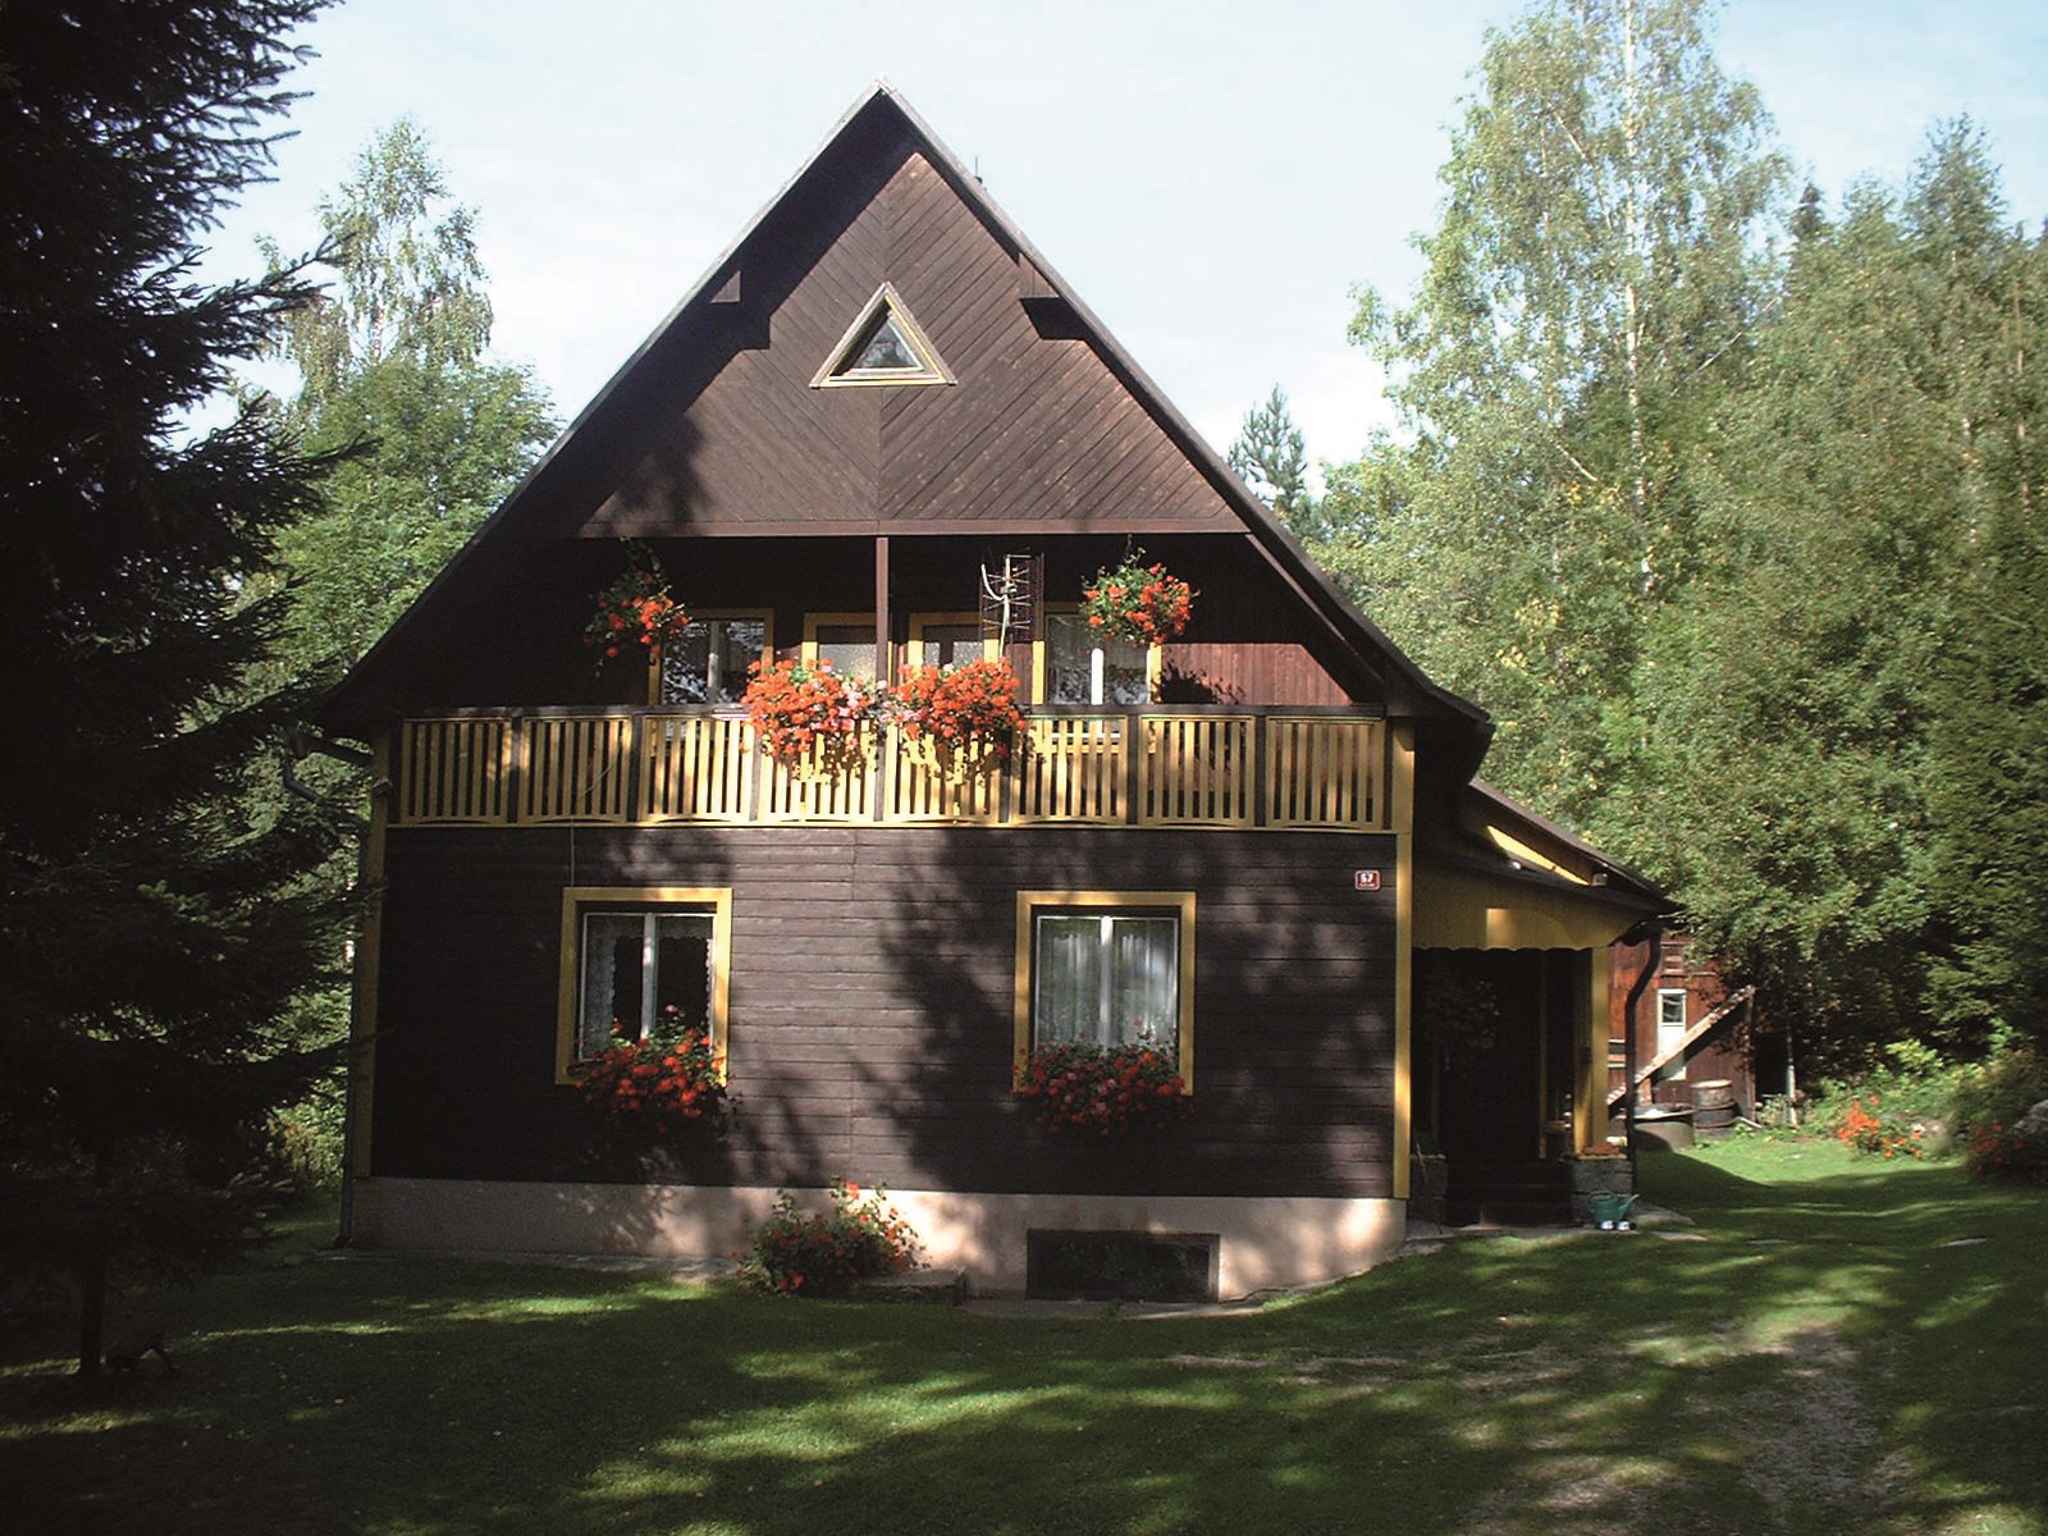 Ferienhaus mit Kaminofen in ruhiger Umgebung Ferienhaus  Tschechische Republik